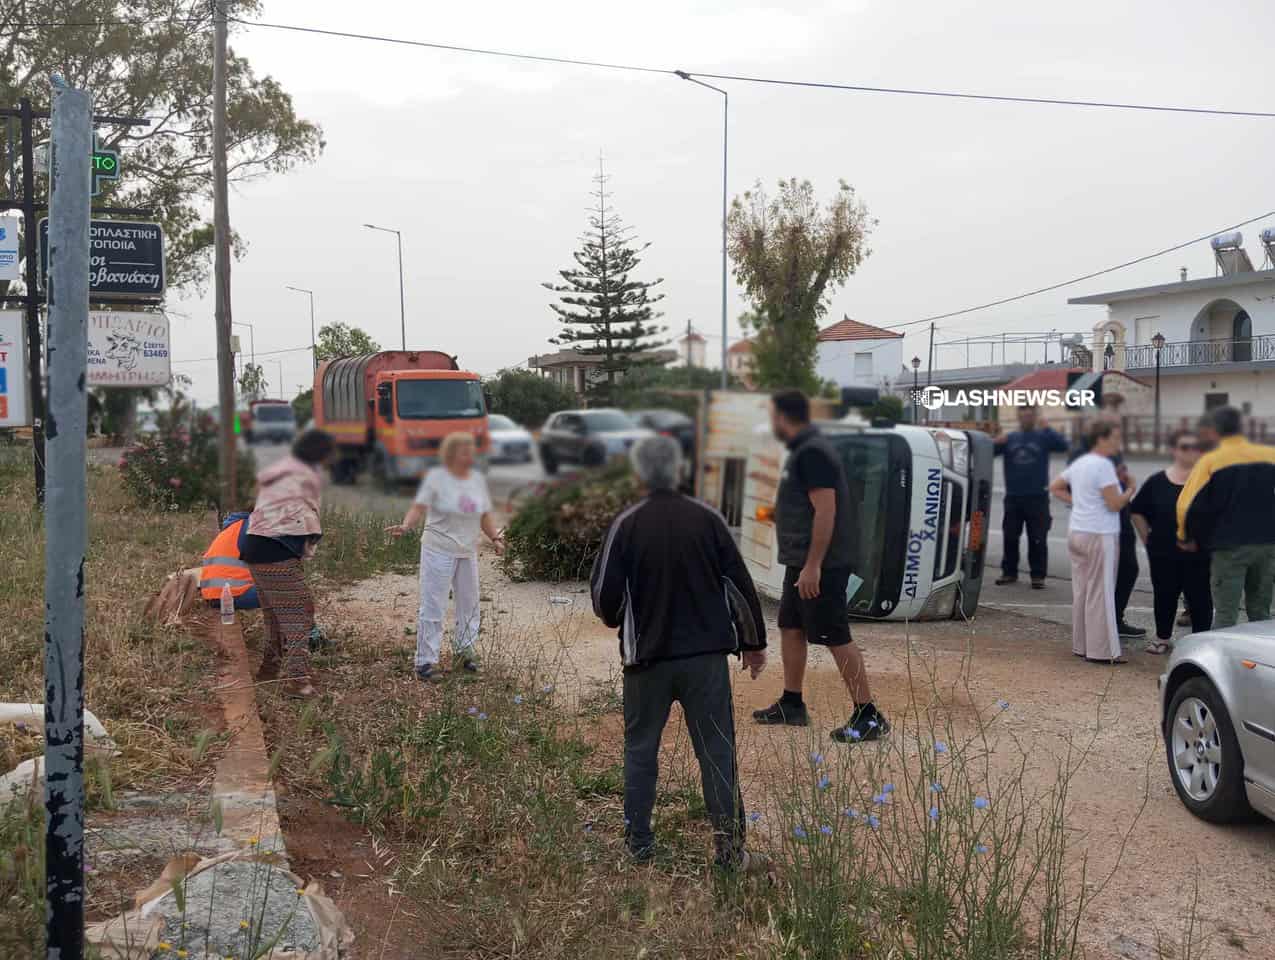 Χανιά: Τροχαίο με φορτηγό του Δήμου στο Αρώνι – Ντελαπάρισε το όχημα, μια τραυματίας (φωτο)